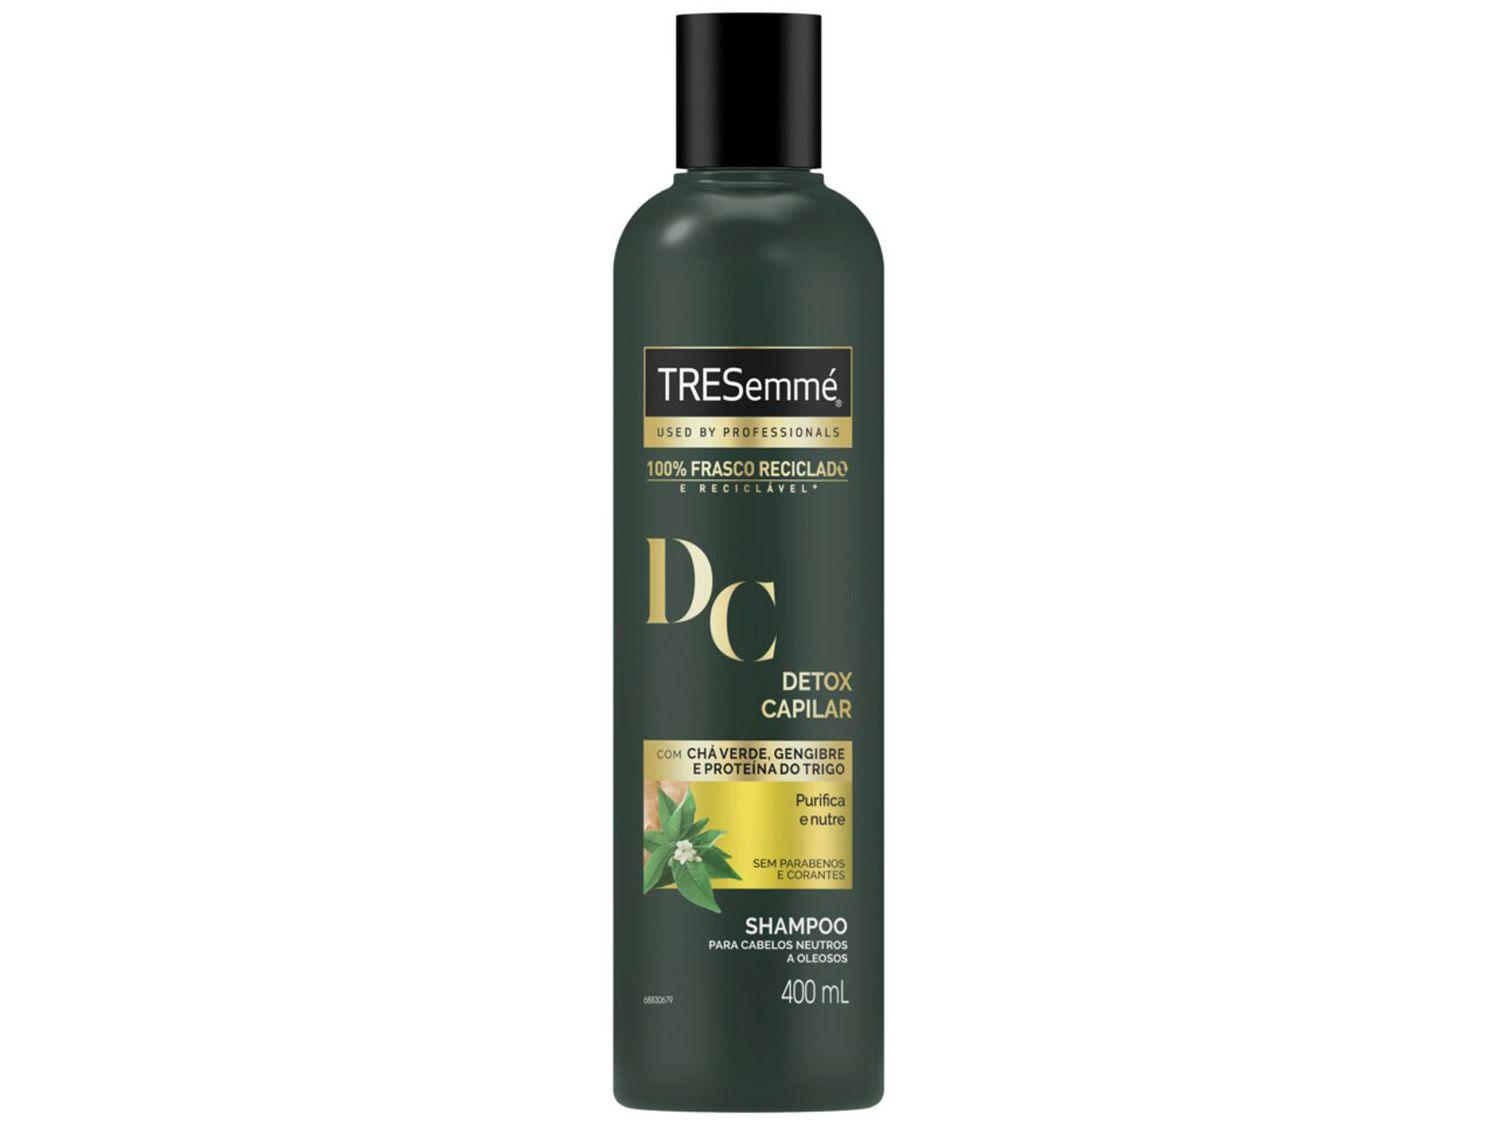 Shampoo TRESemmé Detox Capilar - Cabelos Purificados e Nutridos Profissional 400ml